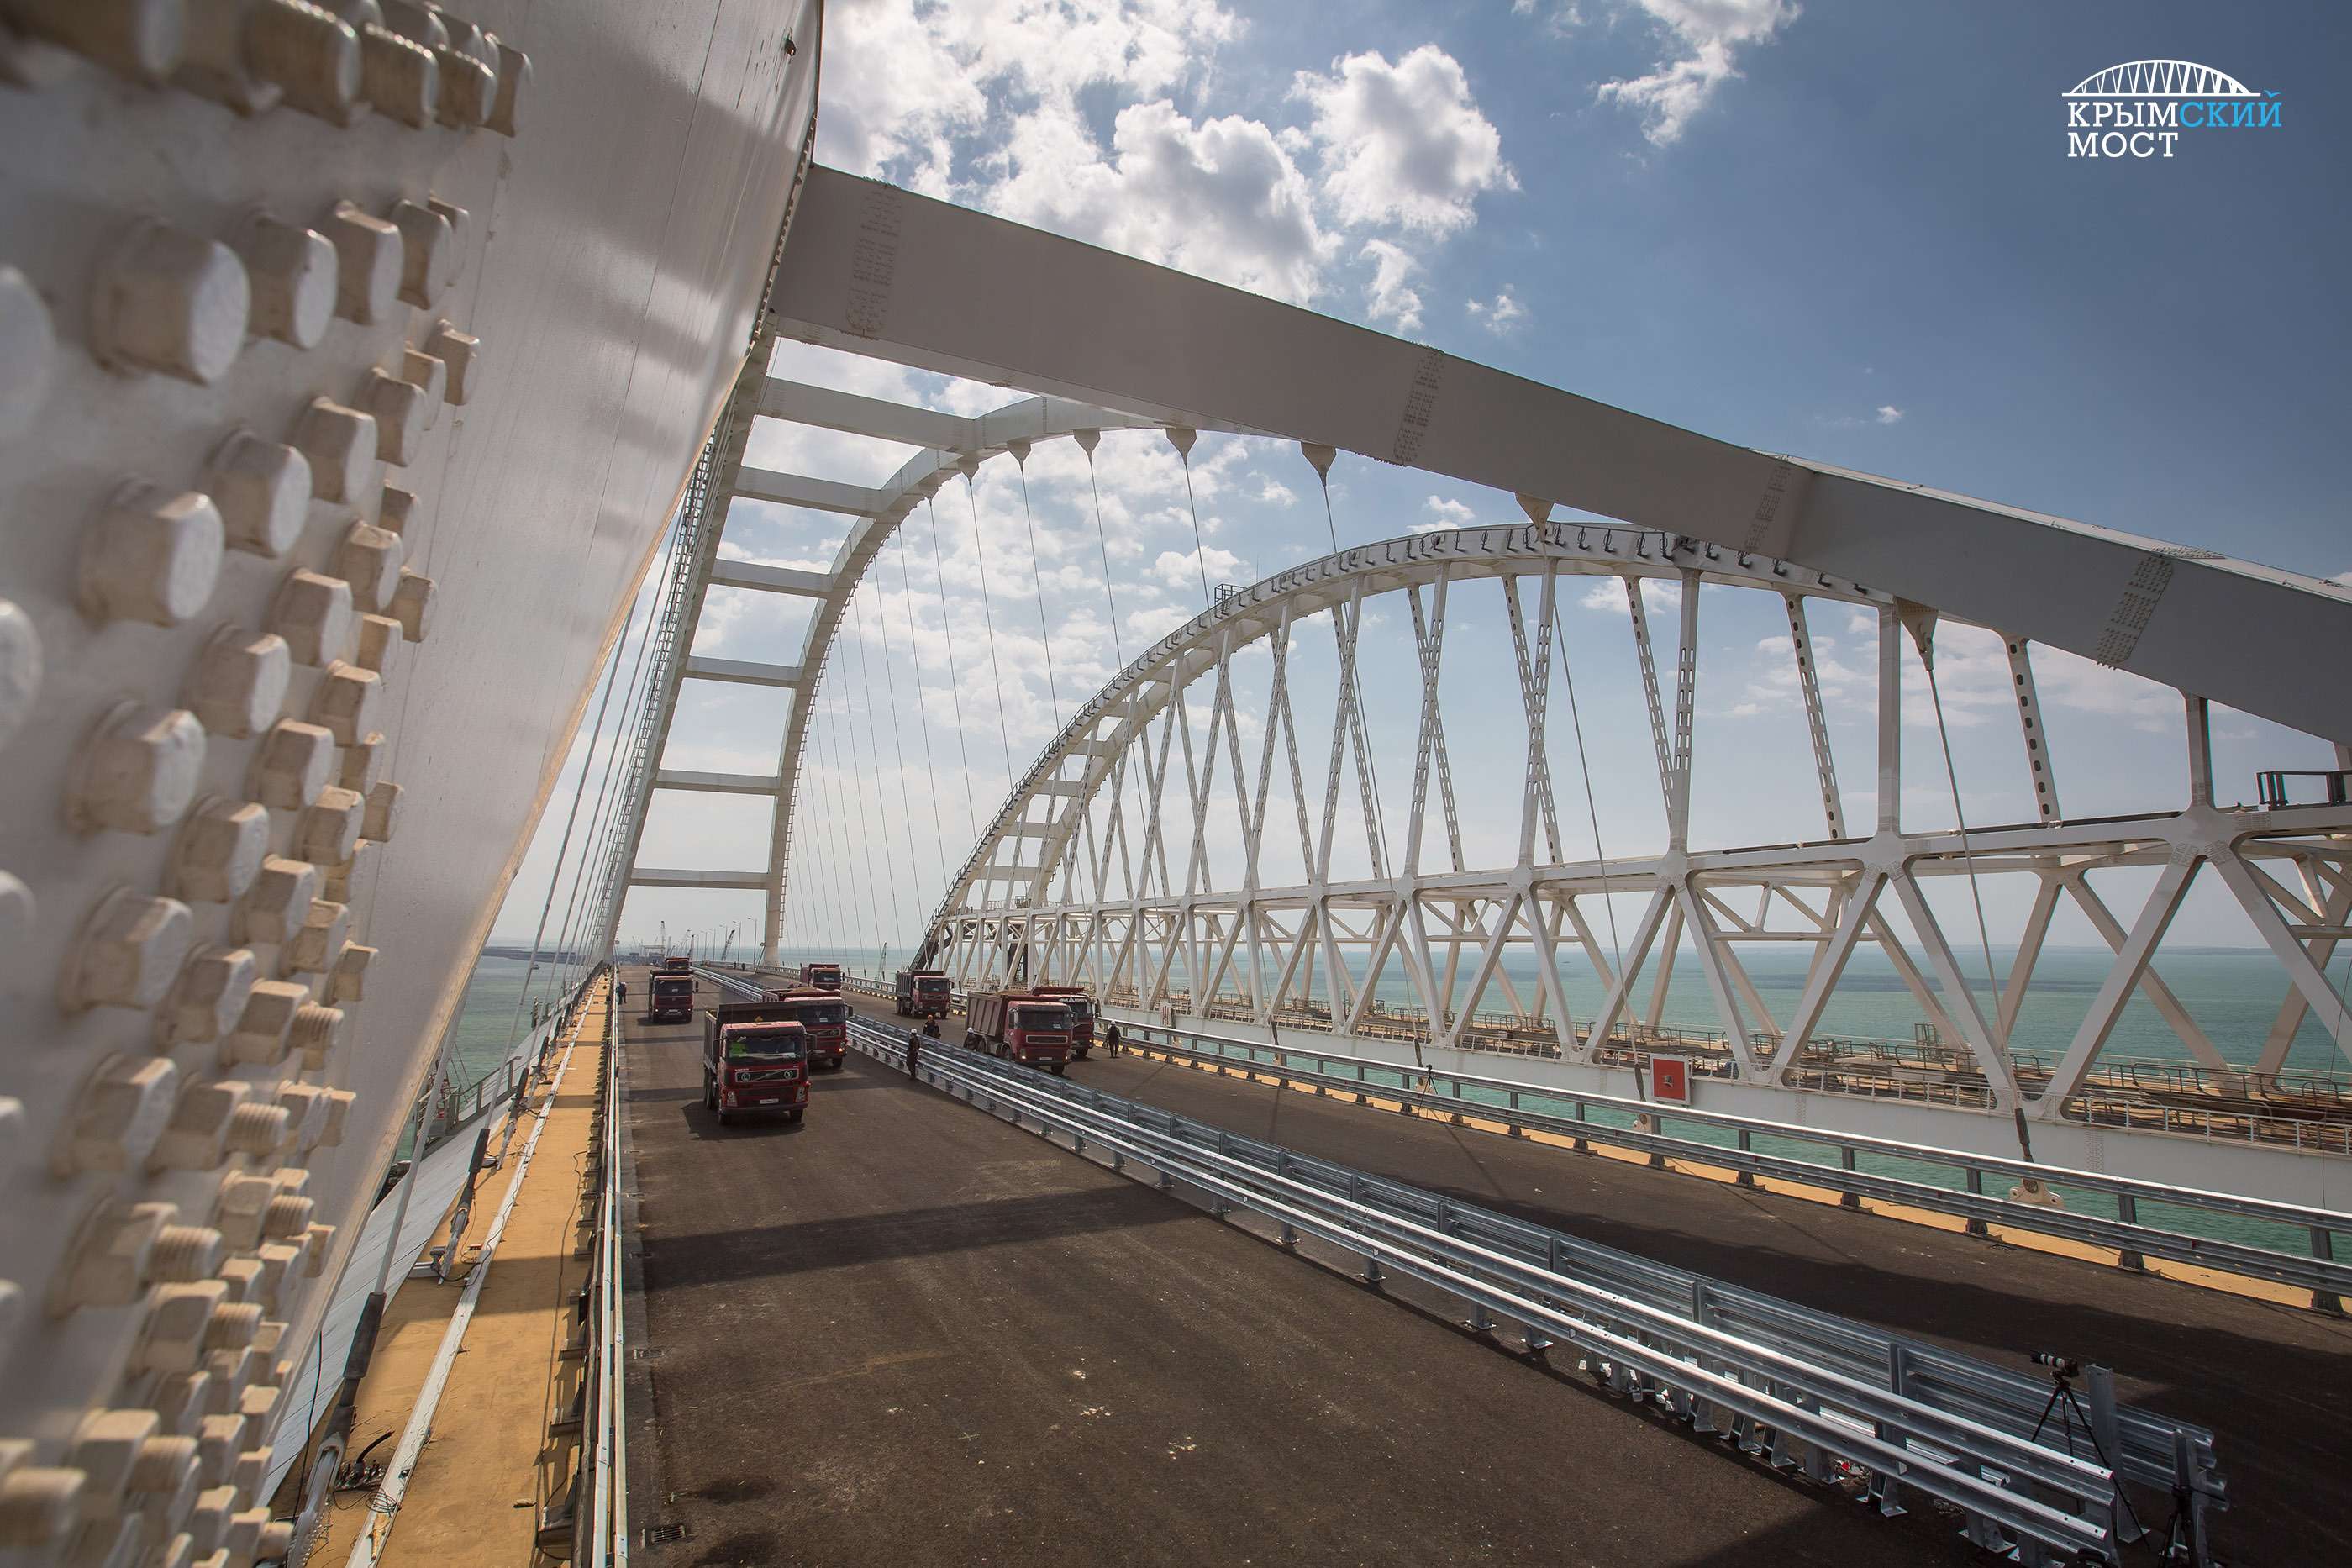 Крымский мост прошел официальные испытания. Скоро поедем! — фото 866049